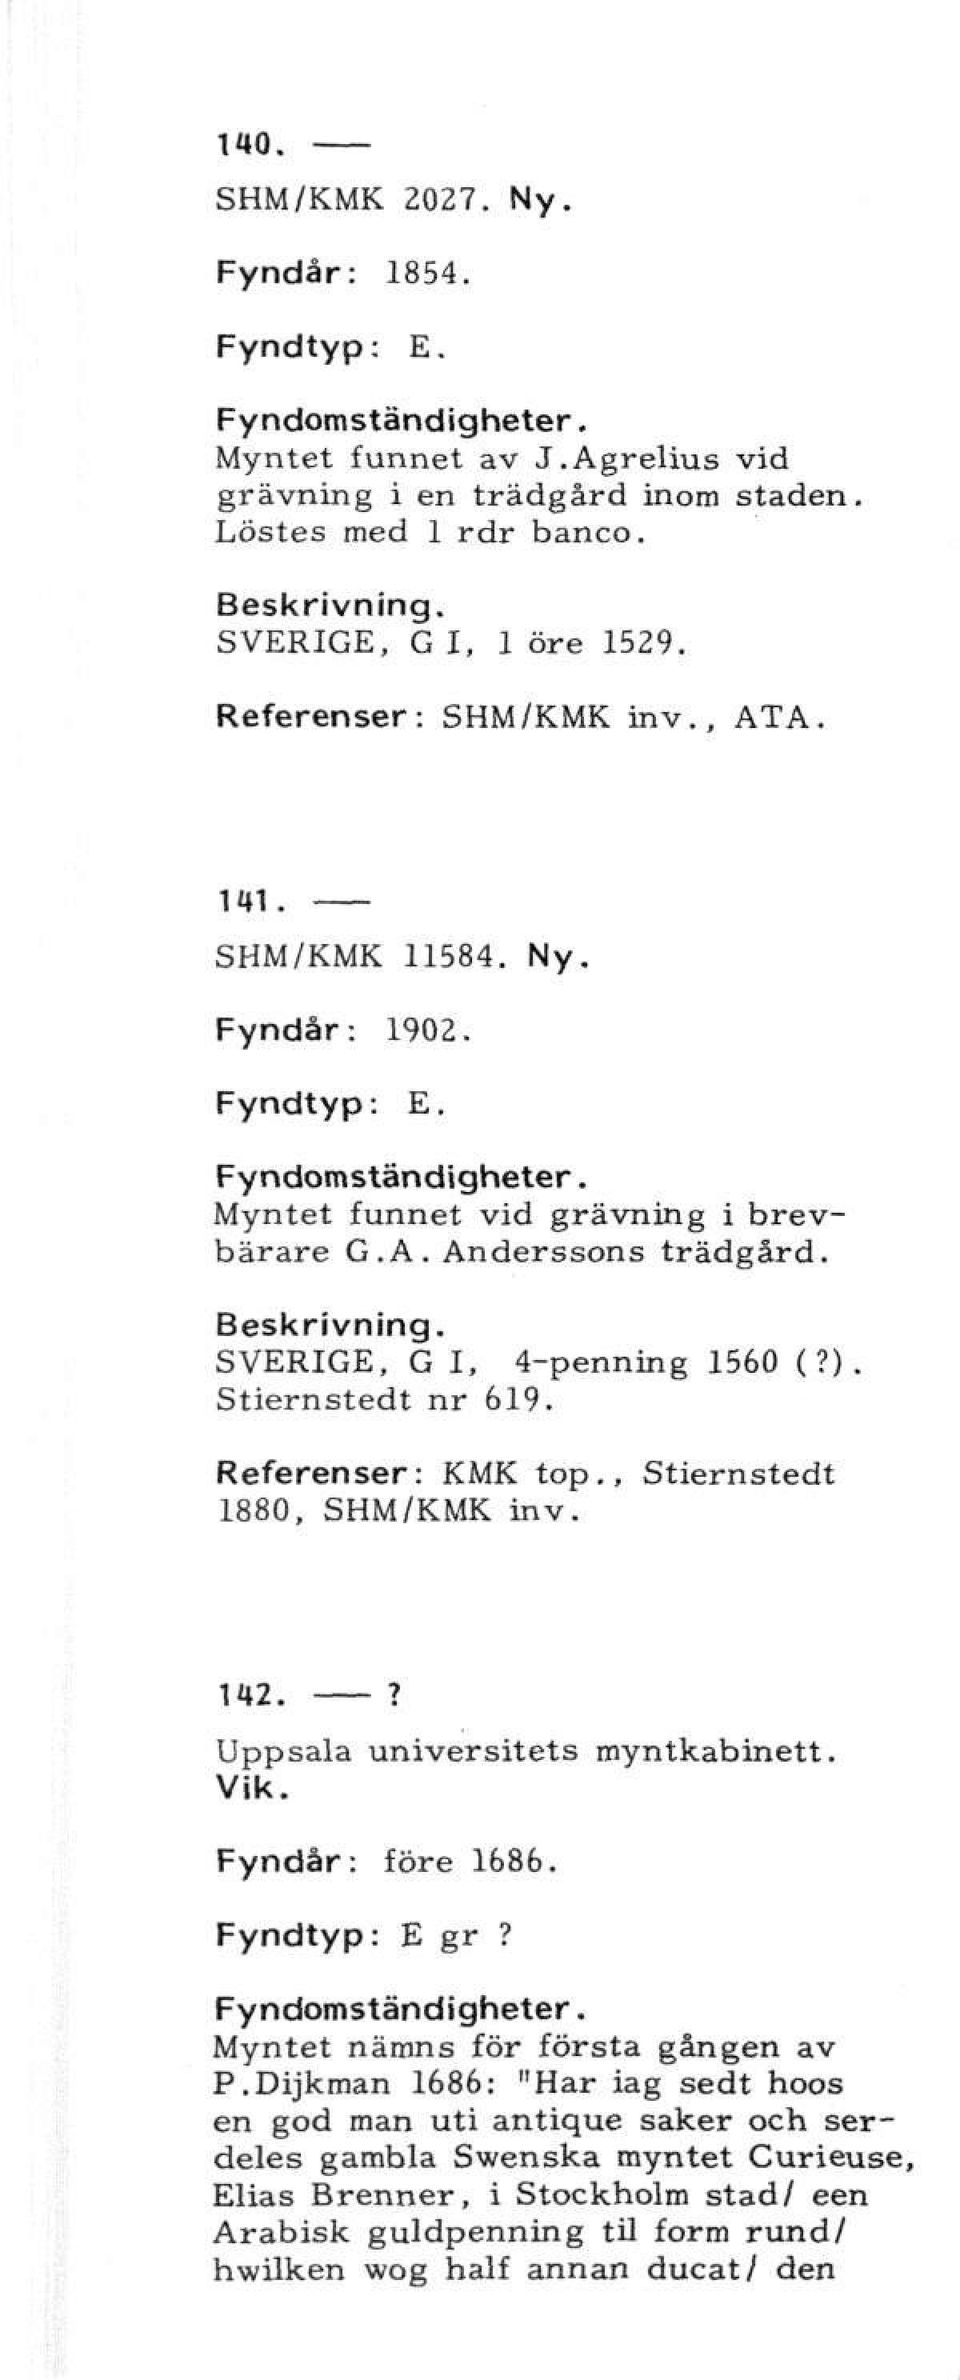 Referenser: KMK top., Stiernstedt 1880, SHM/KMK inv. 1*2.? Uppsala universitets myntkabinett. Vik. Fyndår: före 1686. Fyndtyp: E gr? Myntet nämns för första gången av P.